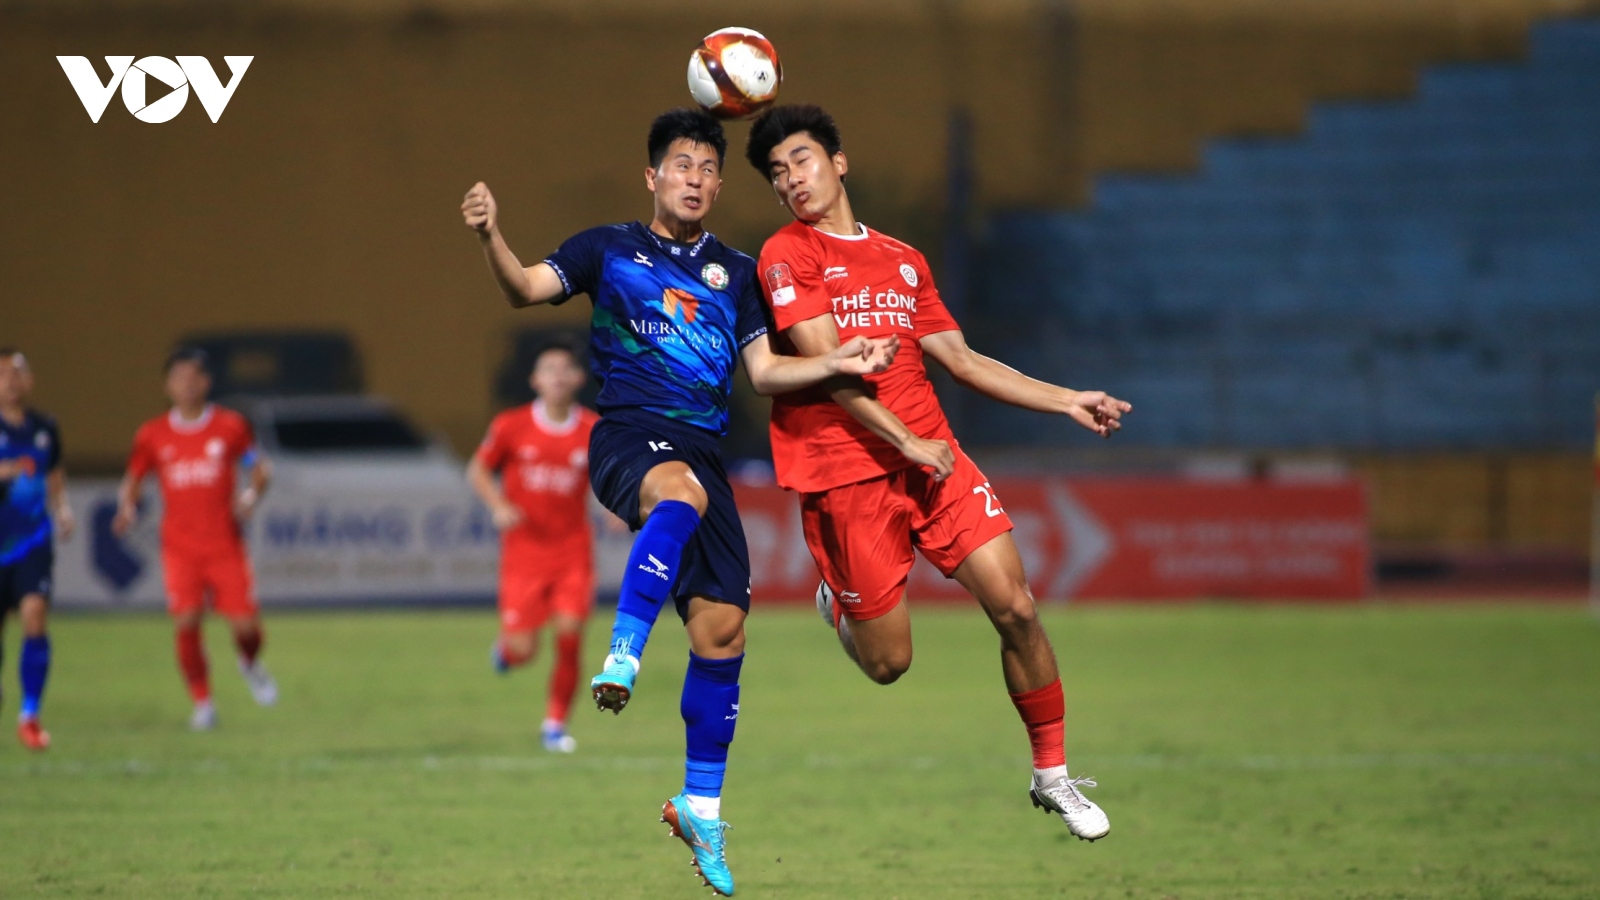 TRỰC TIẾP Thể Công Viettel 0-0 Bình Định: Đội khách tăng cường sức tấn công